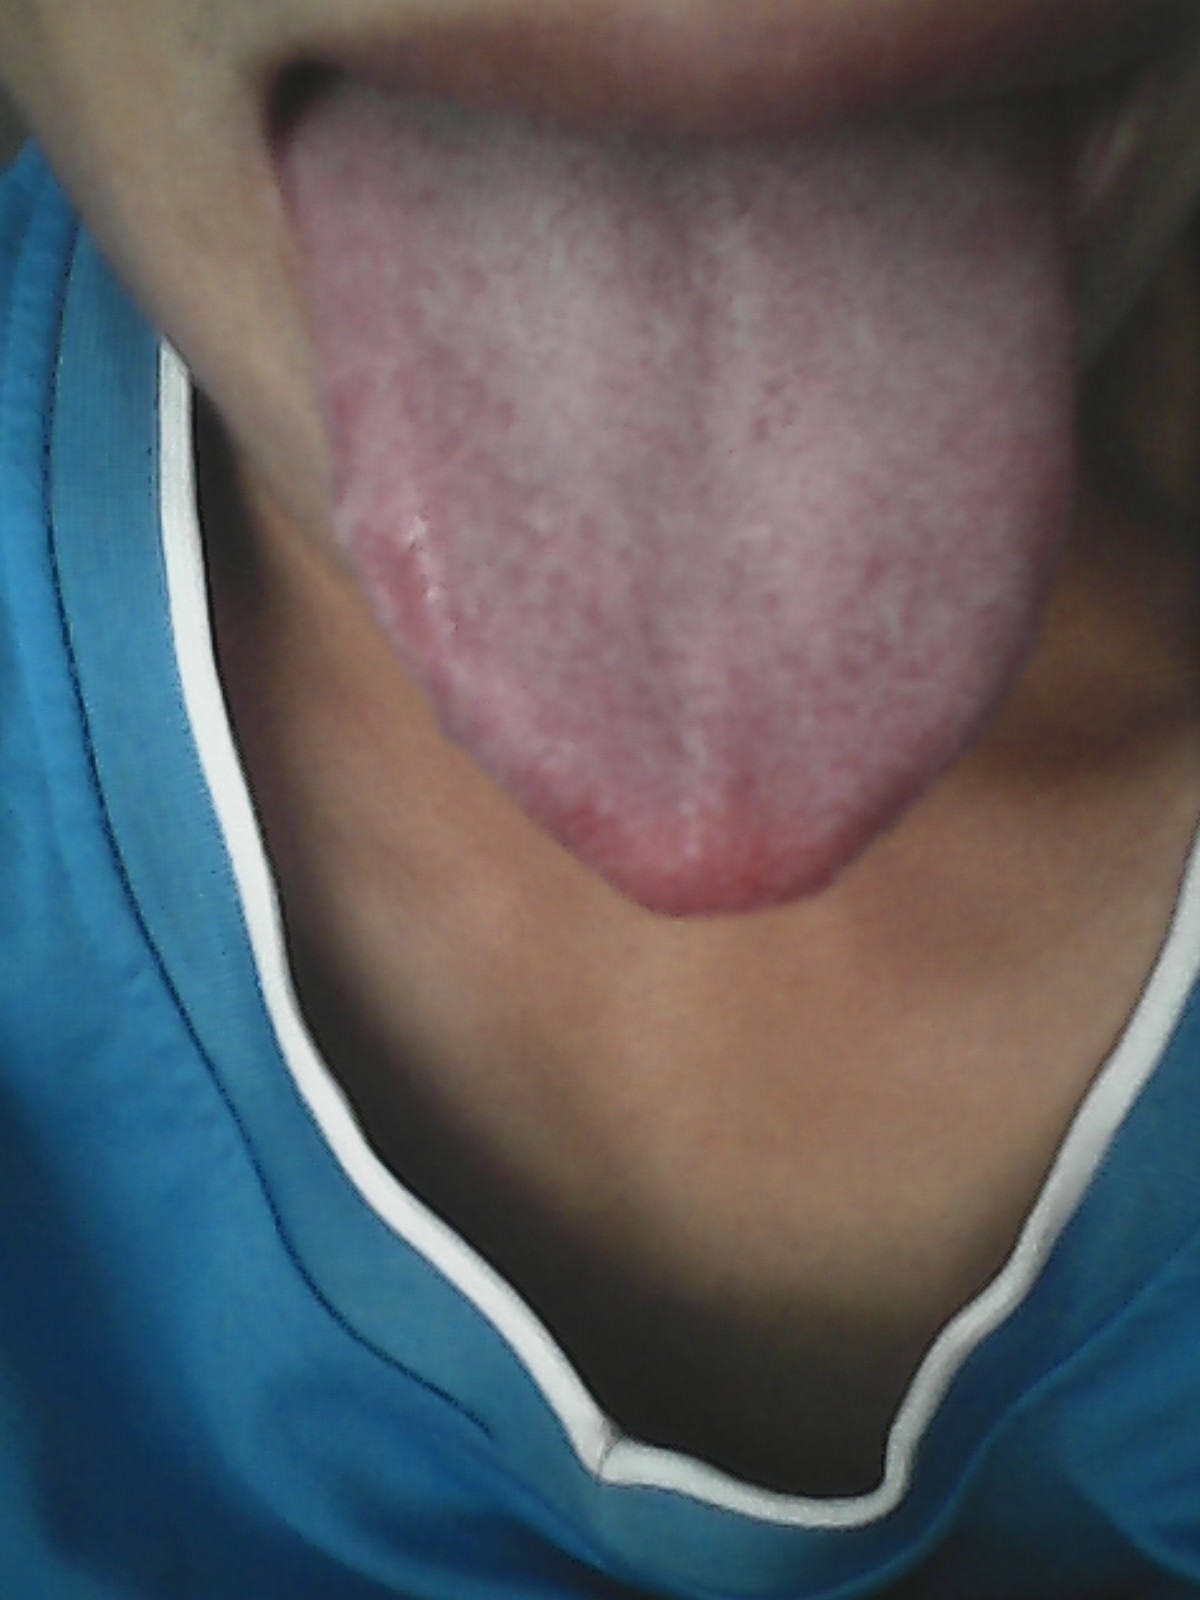 肺火大的舌苔图片图片